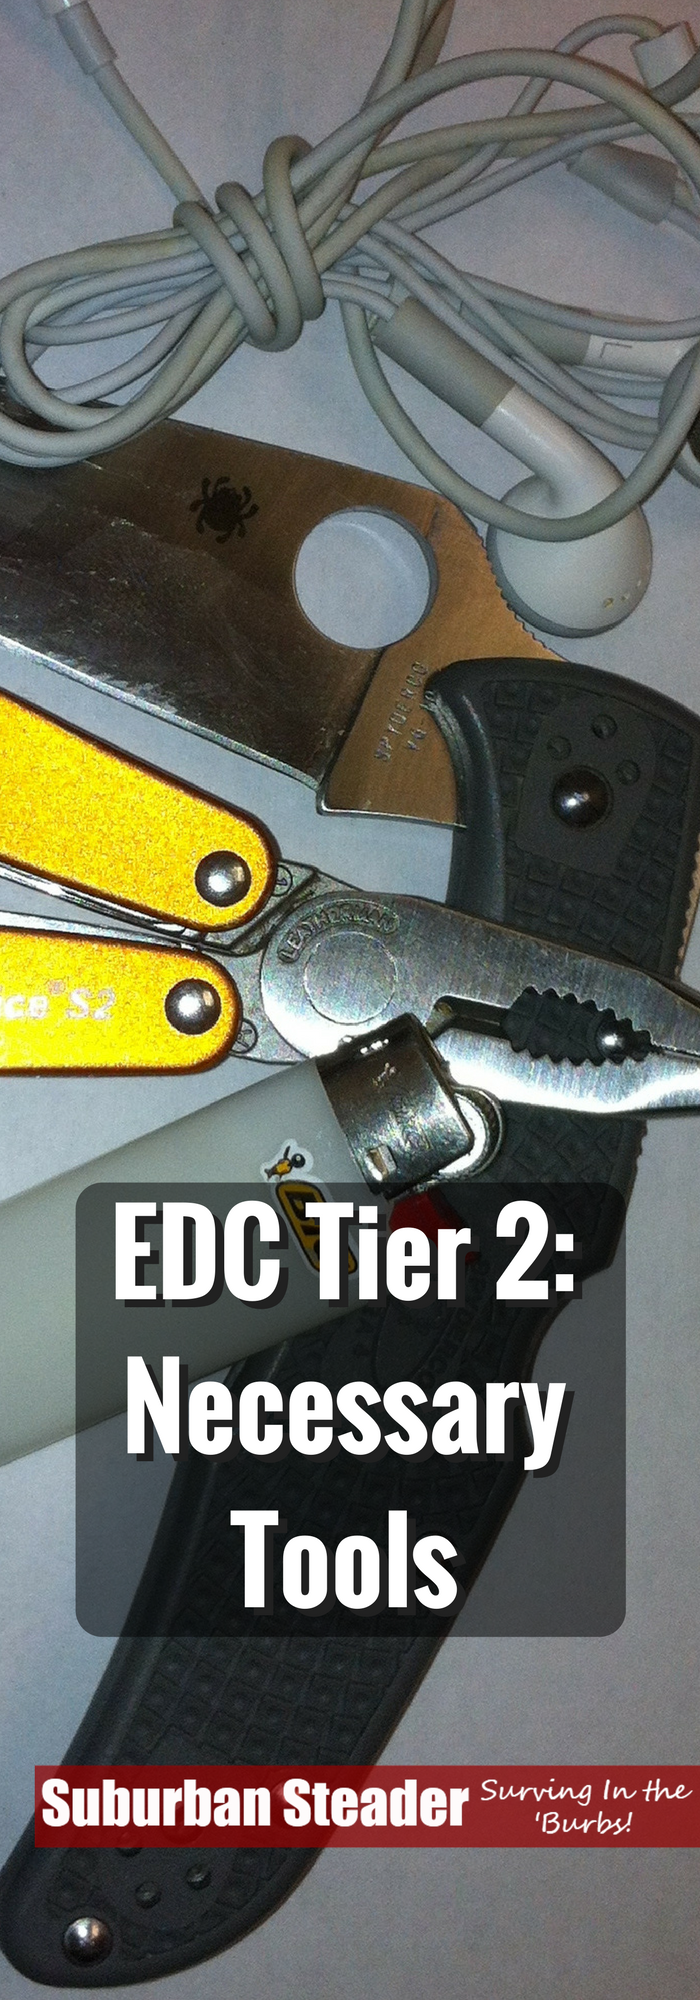 EDC Tier 2